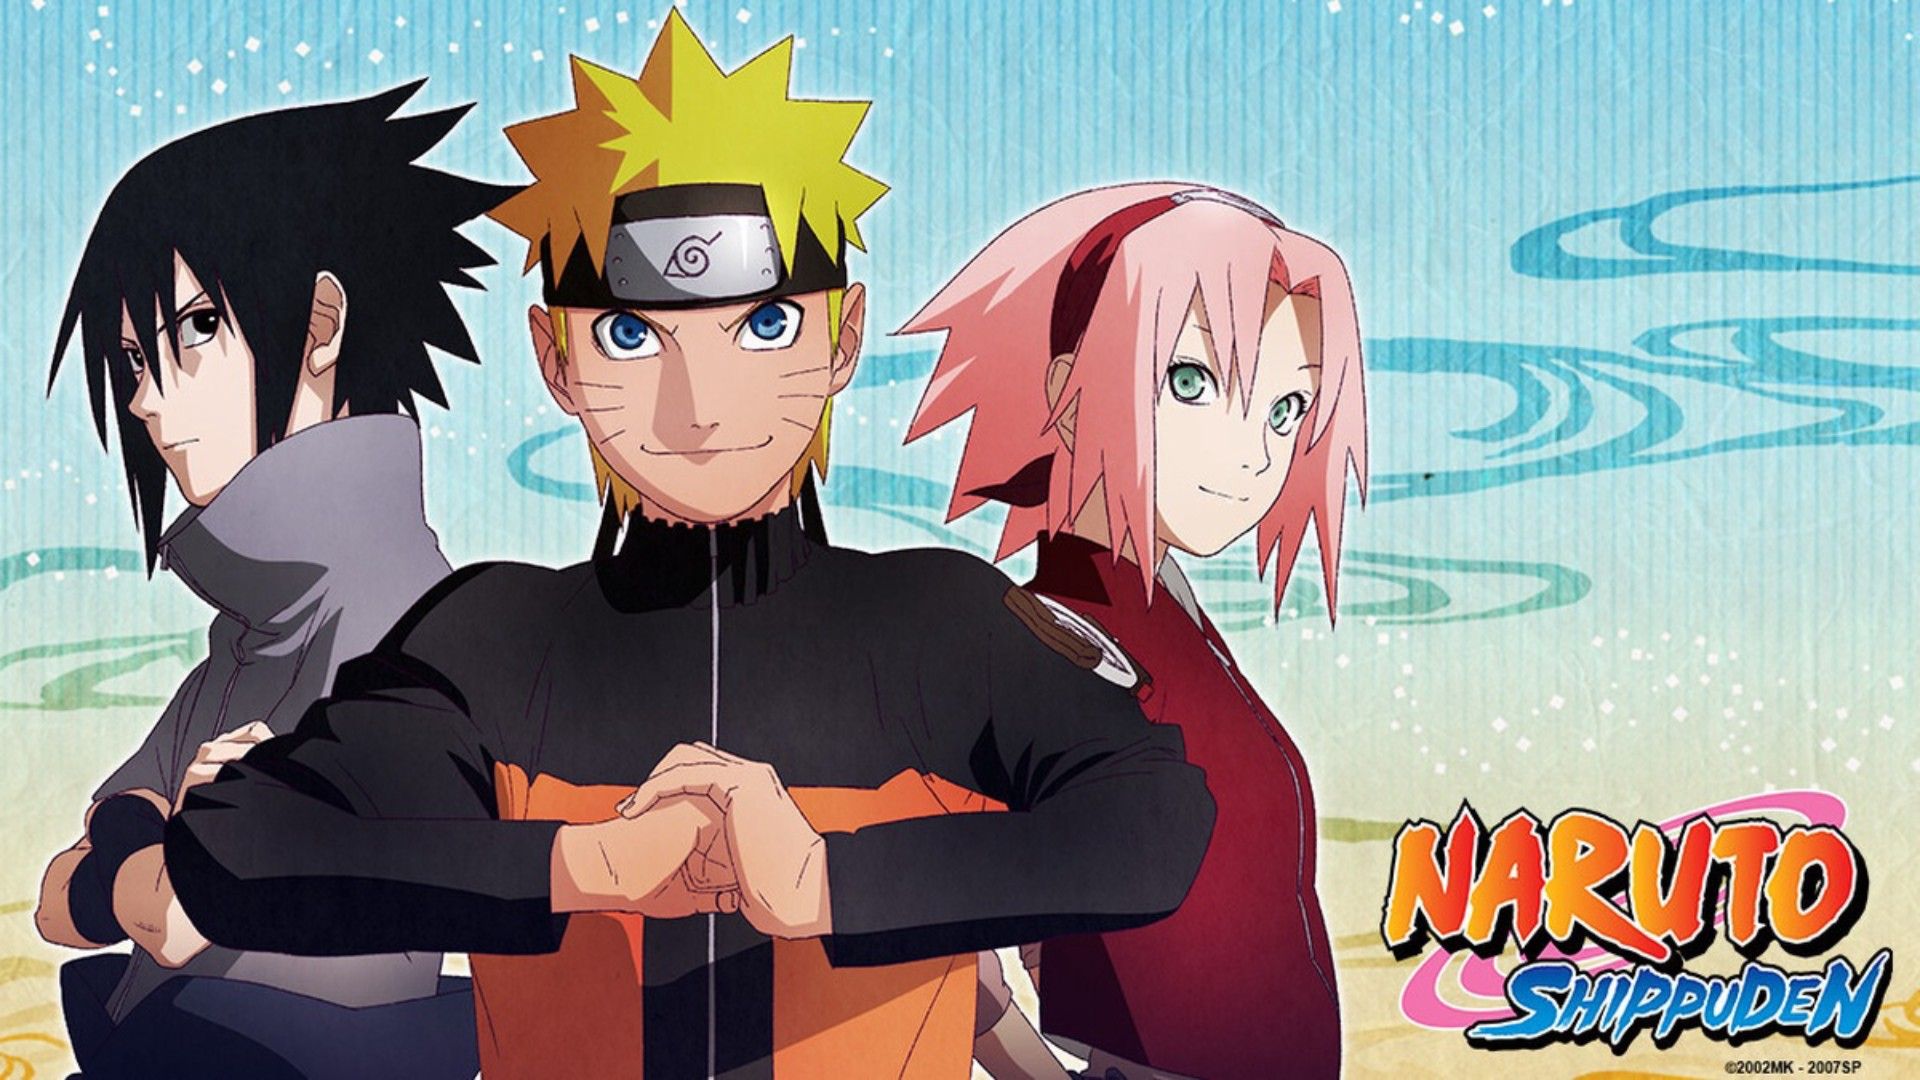 Naruto Shippuden: Season 36 - TV on Google Play